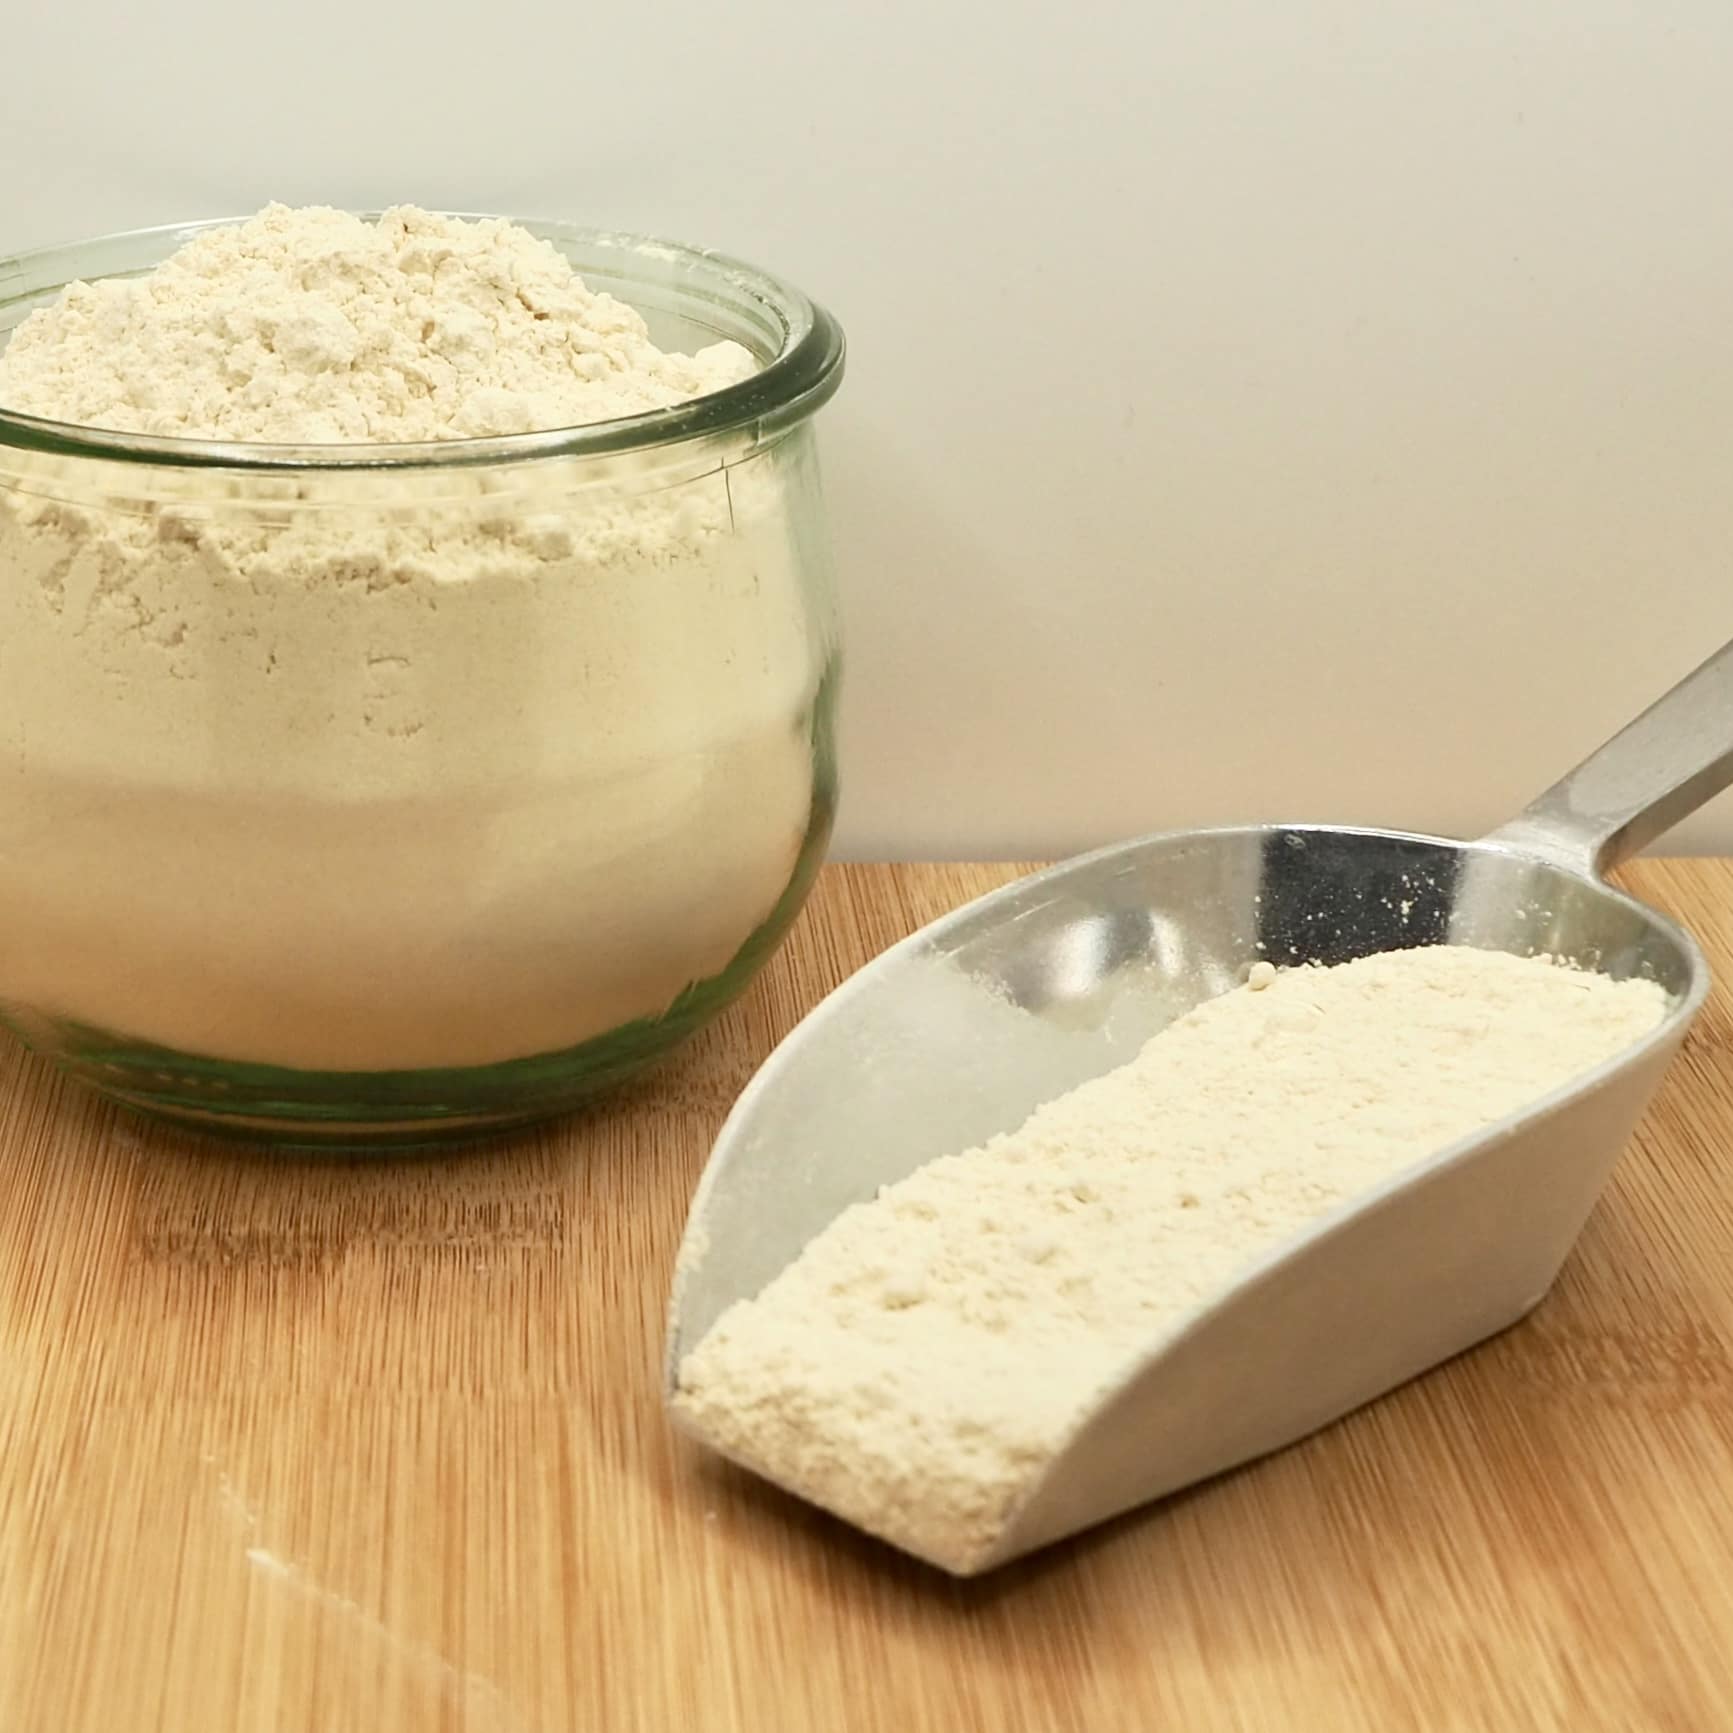 Gluten de blé (250g) – Au Gramme Près